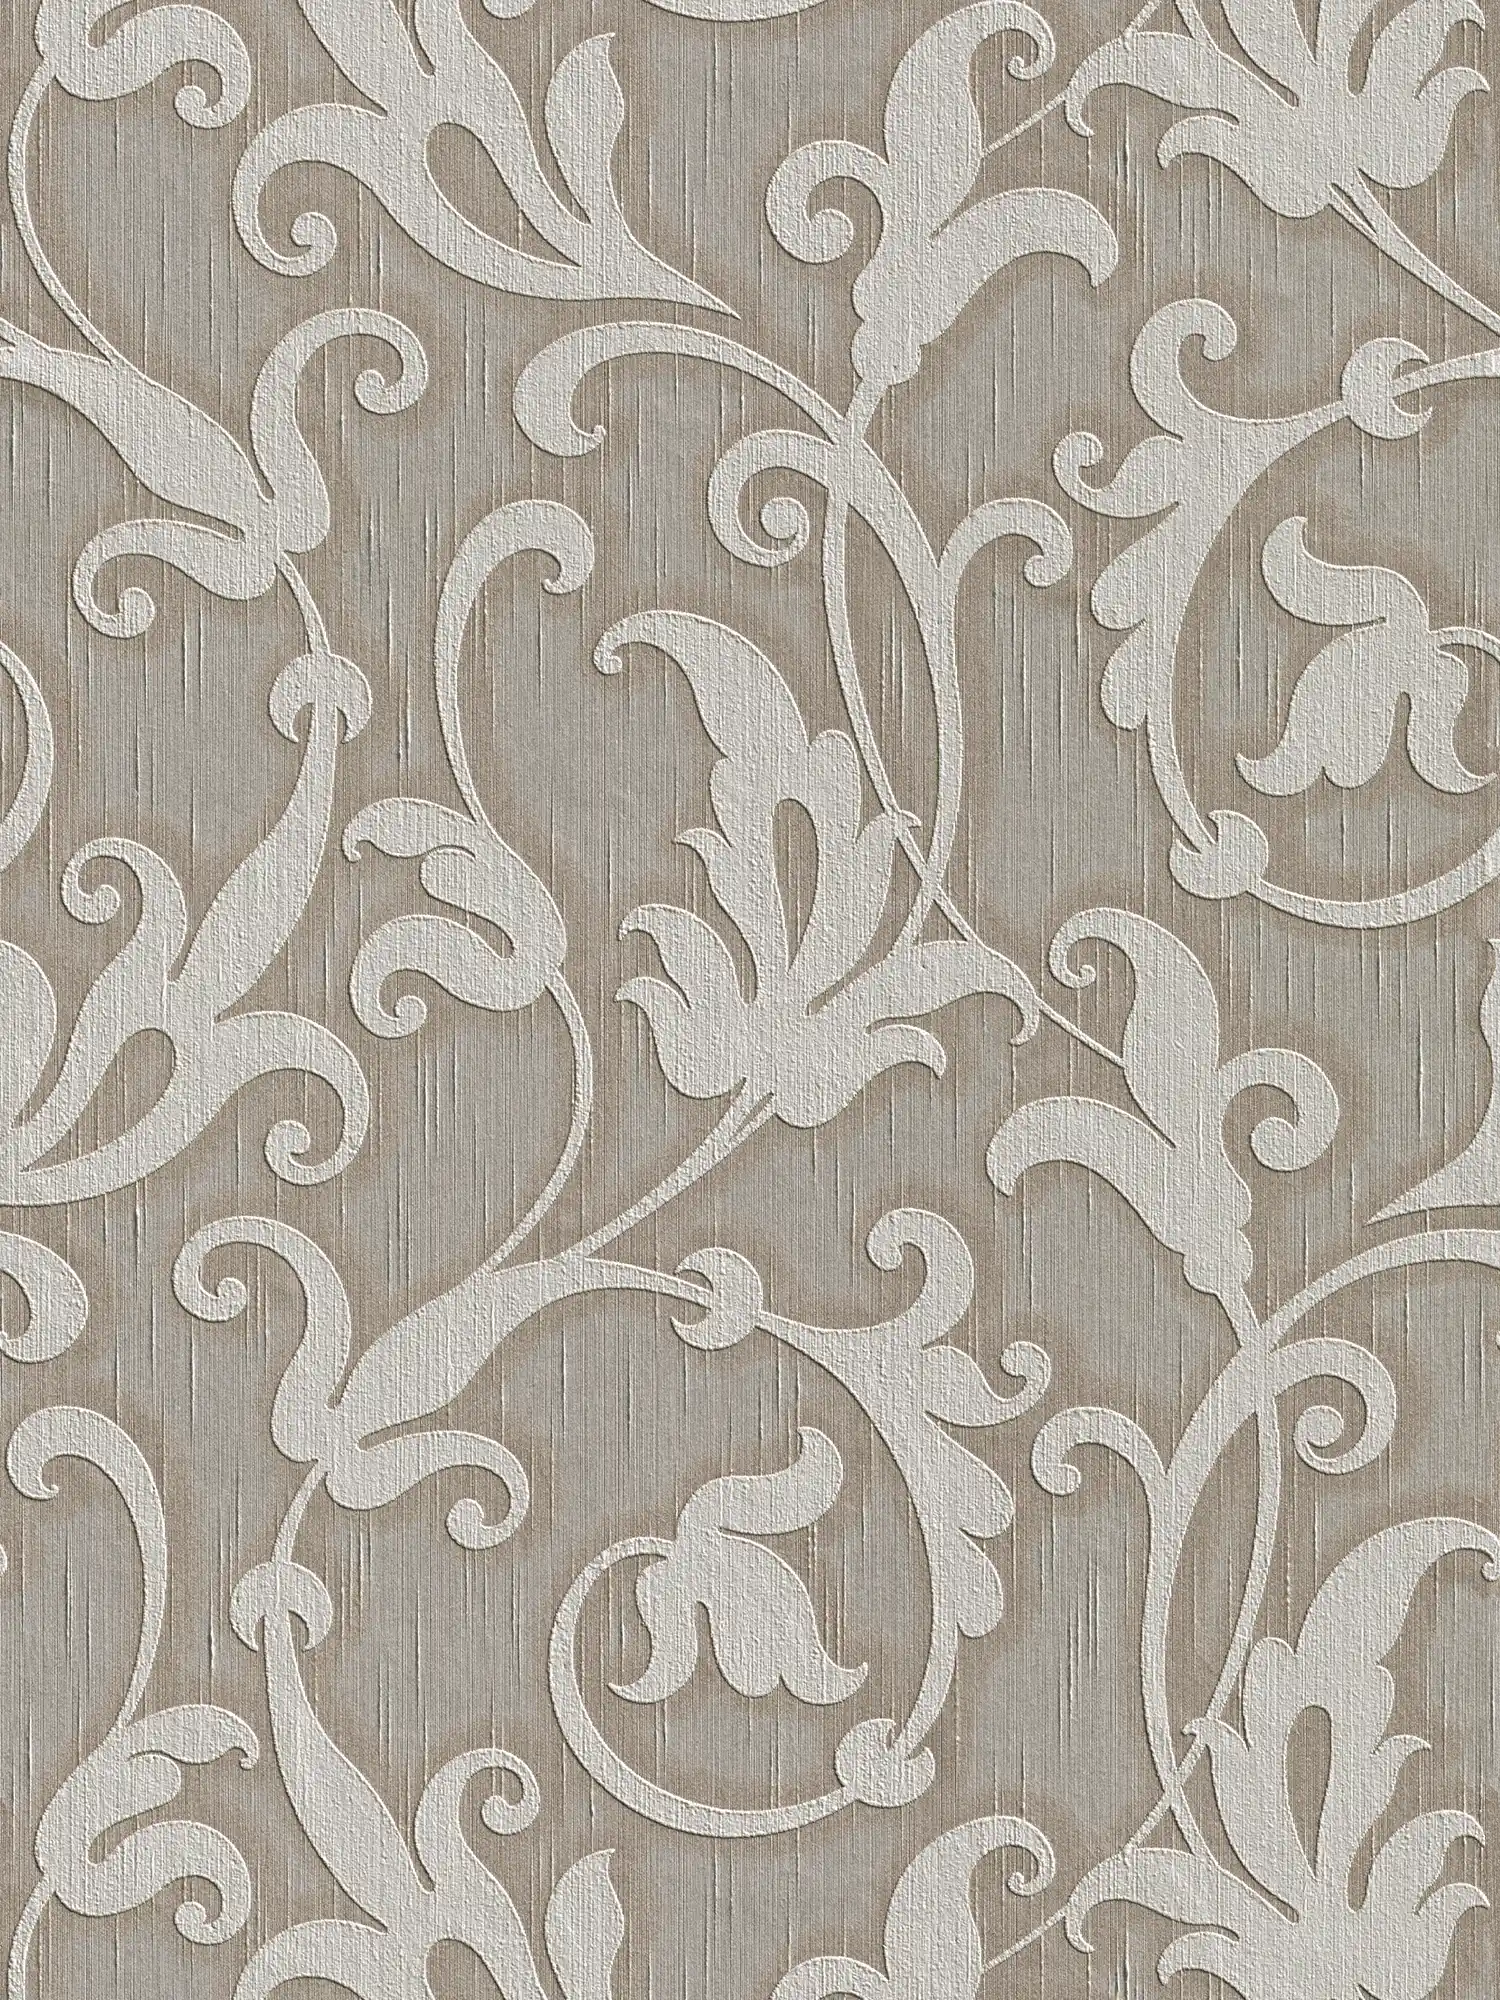 Hoogwaardig ornamentbehang met textielstructuur & reliëfpatroon - grijs, bruin
